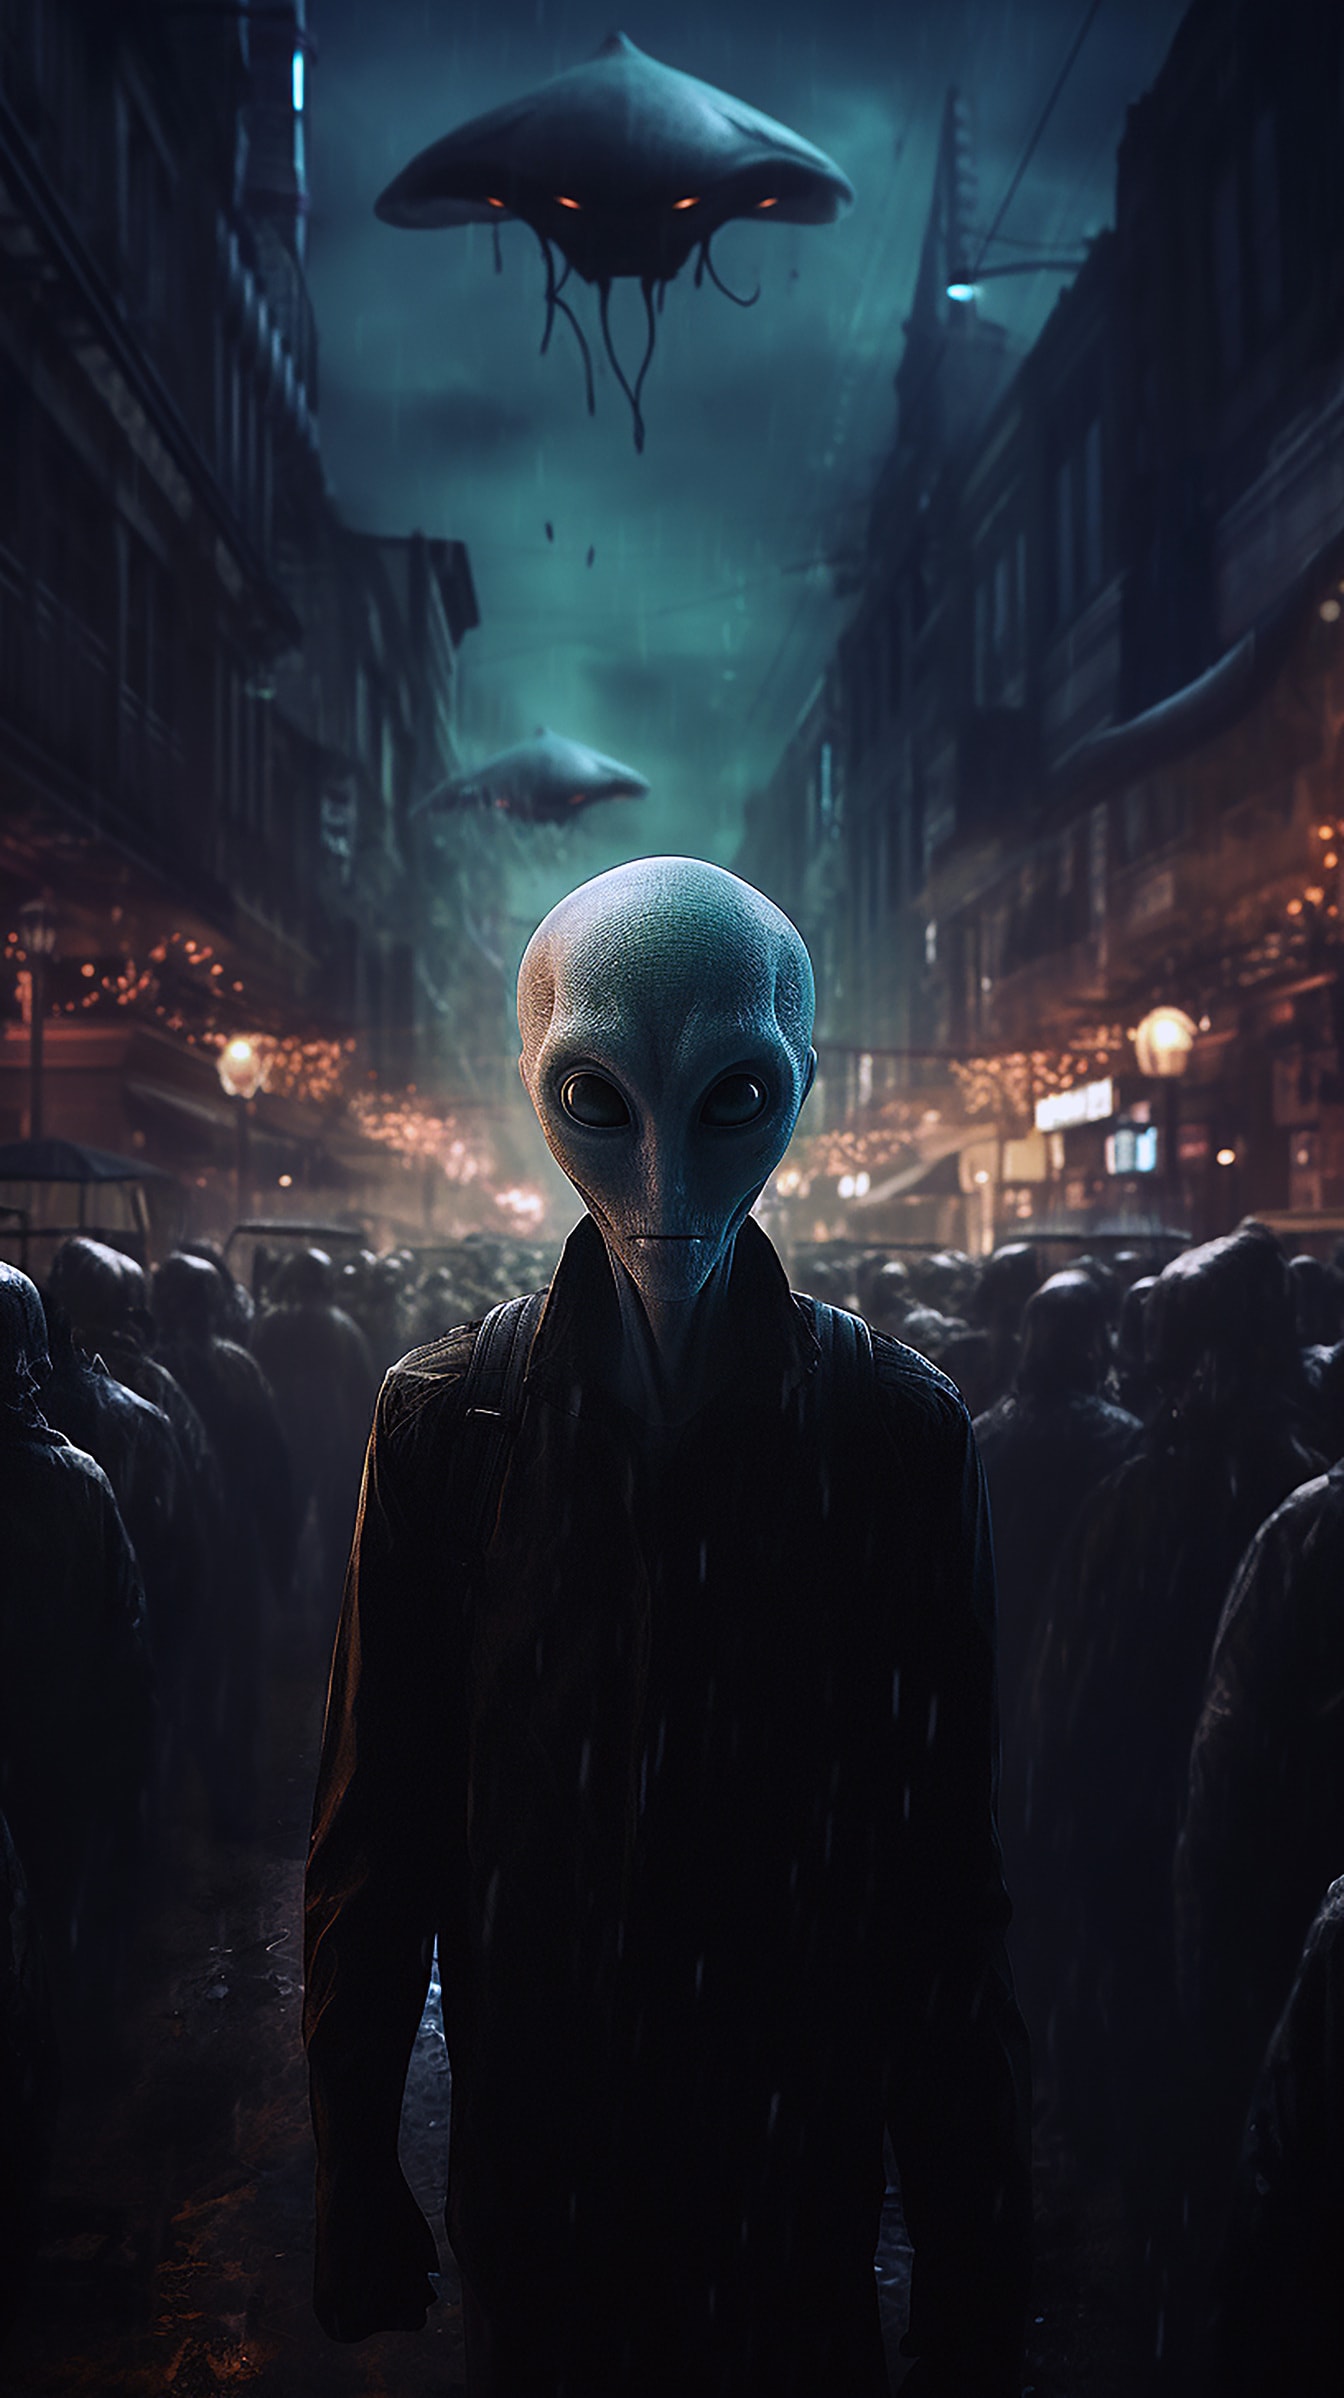 Humanoid alien på gaden om natten fantasy horror illustration